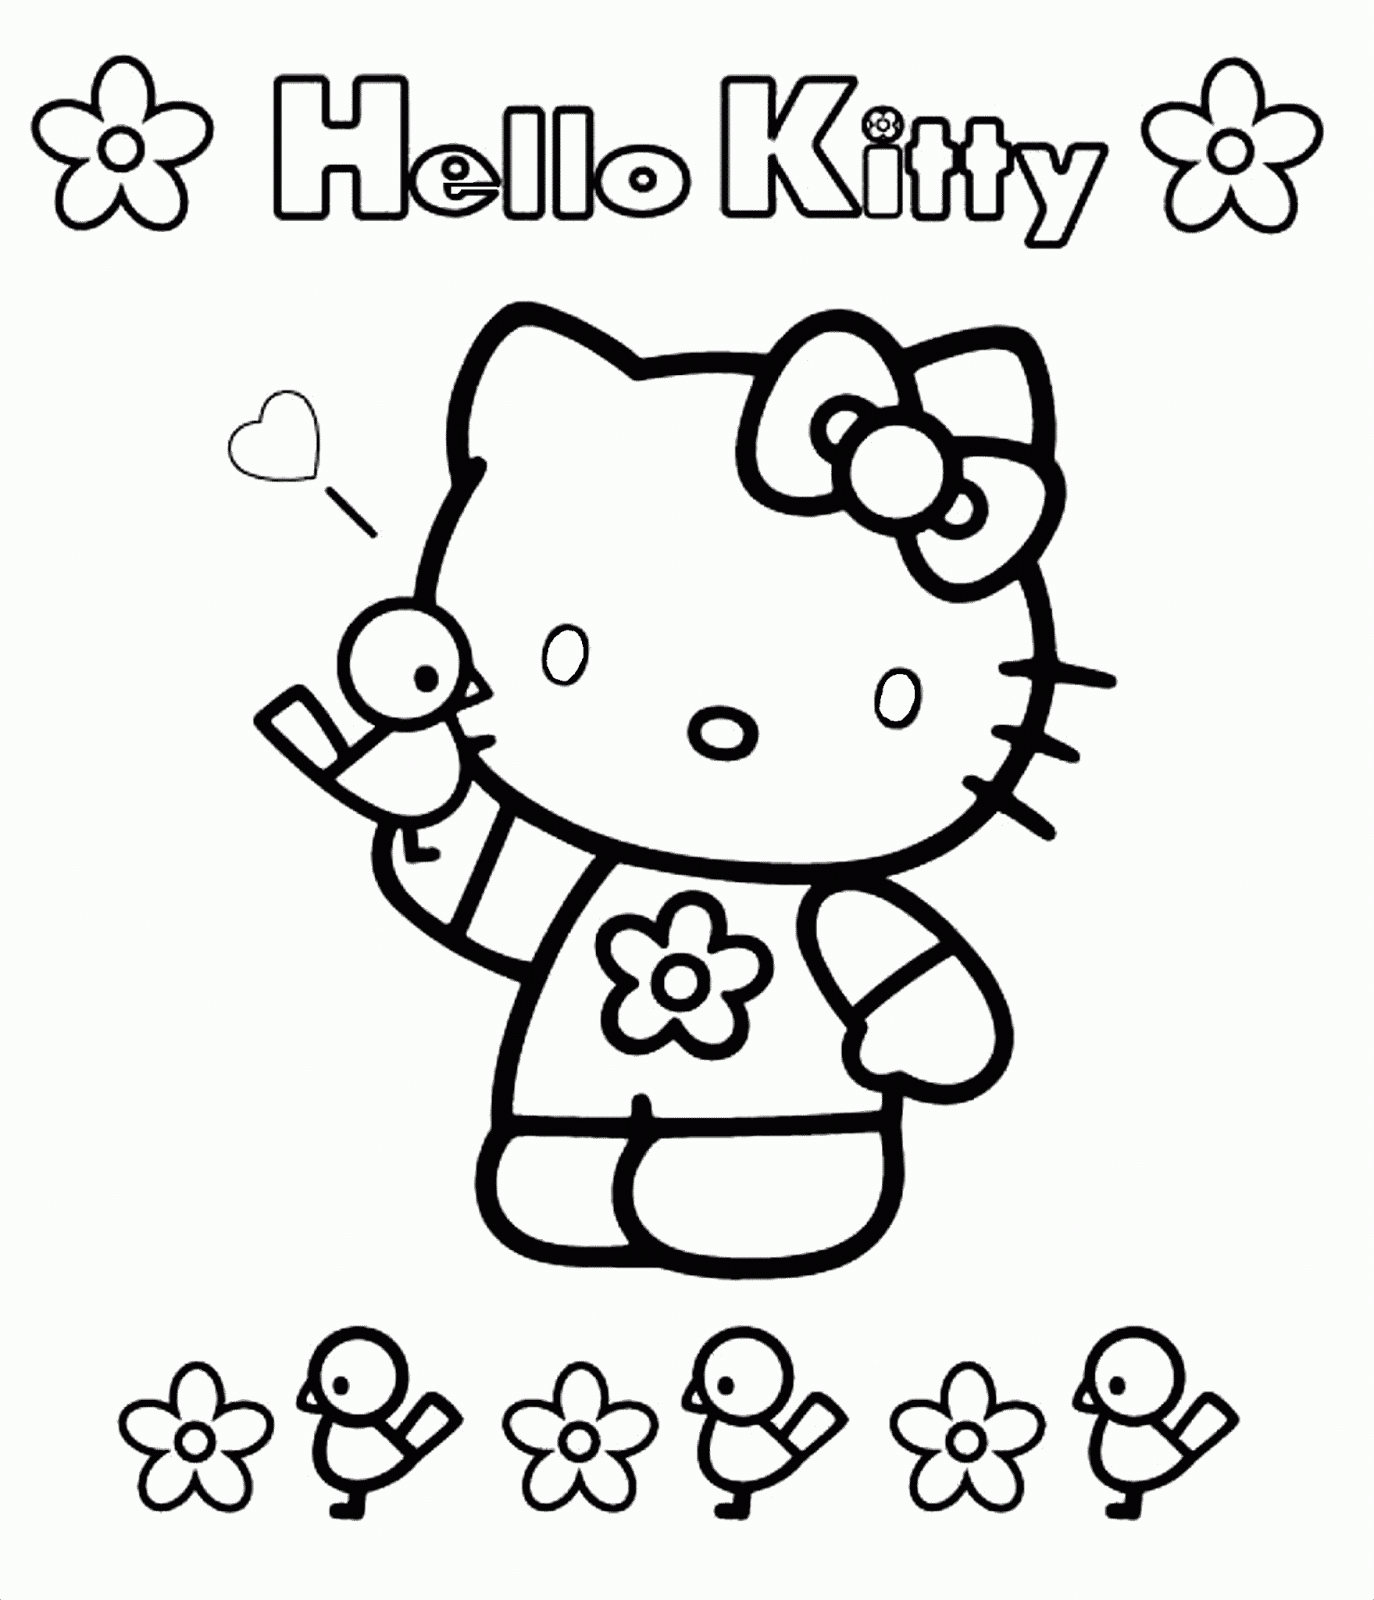 Desenhos da Hello Kitty para pintar, colorir, imprimir! Moldes e riscos Hello Kitty